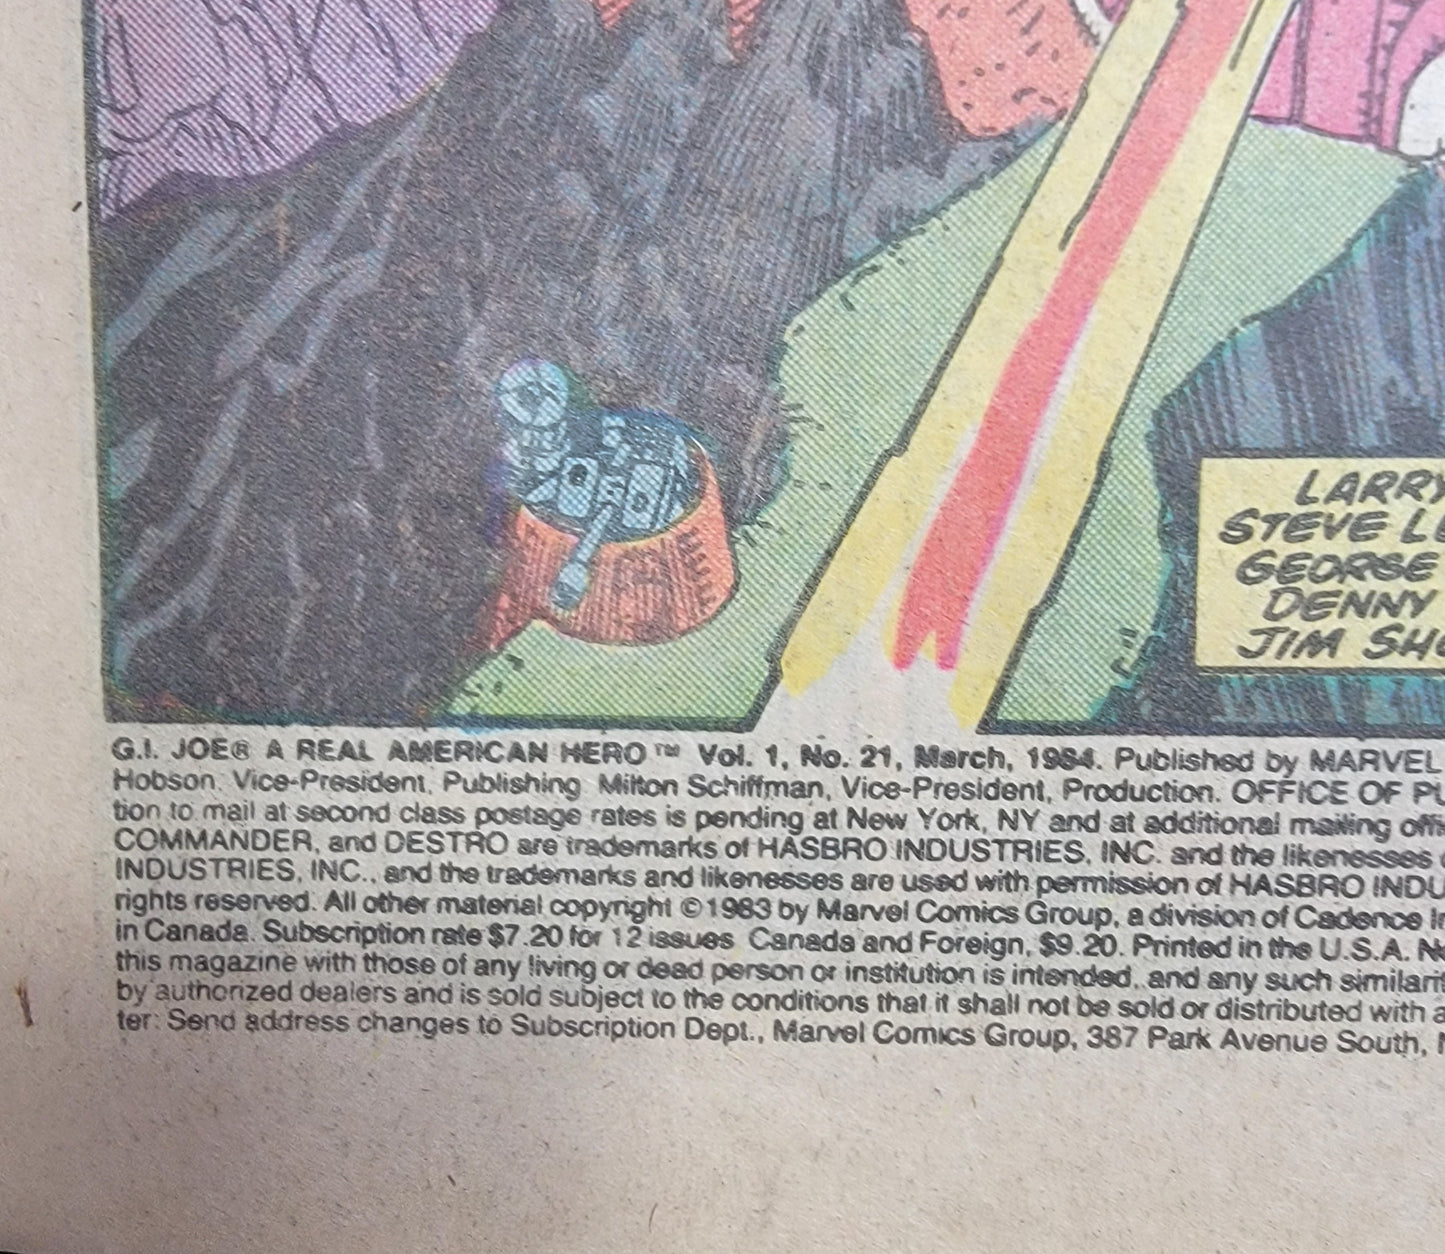 G.i. joe  a real American hero comic number 21 (1984)